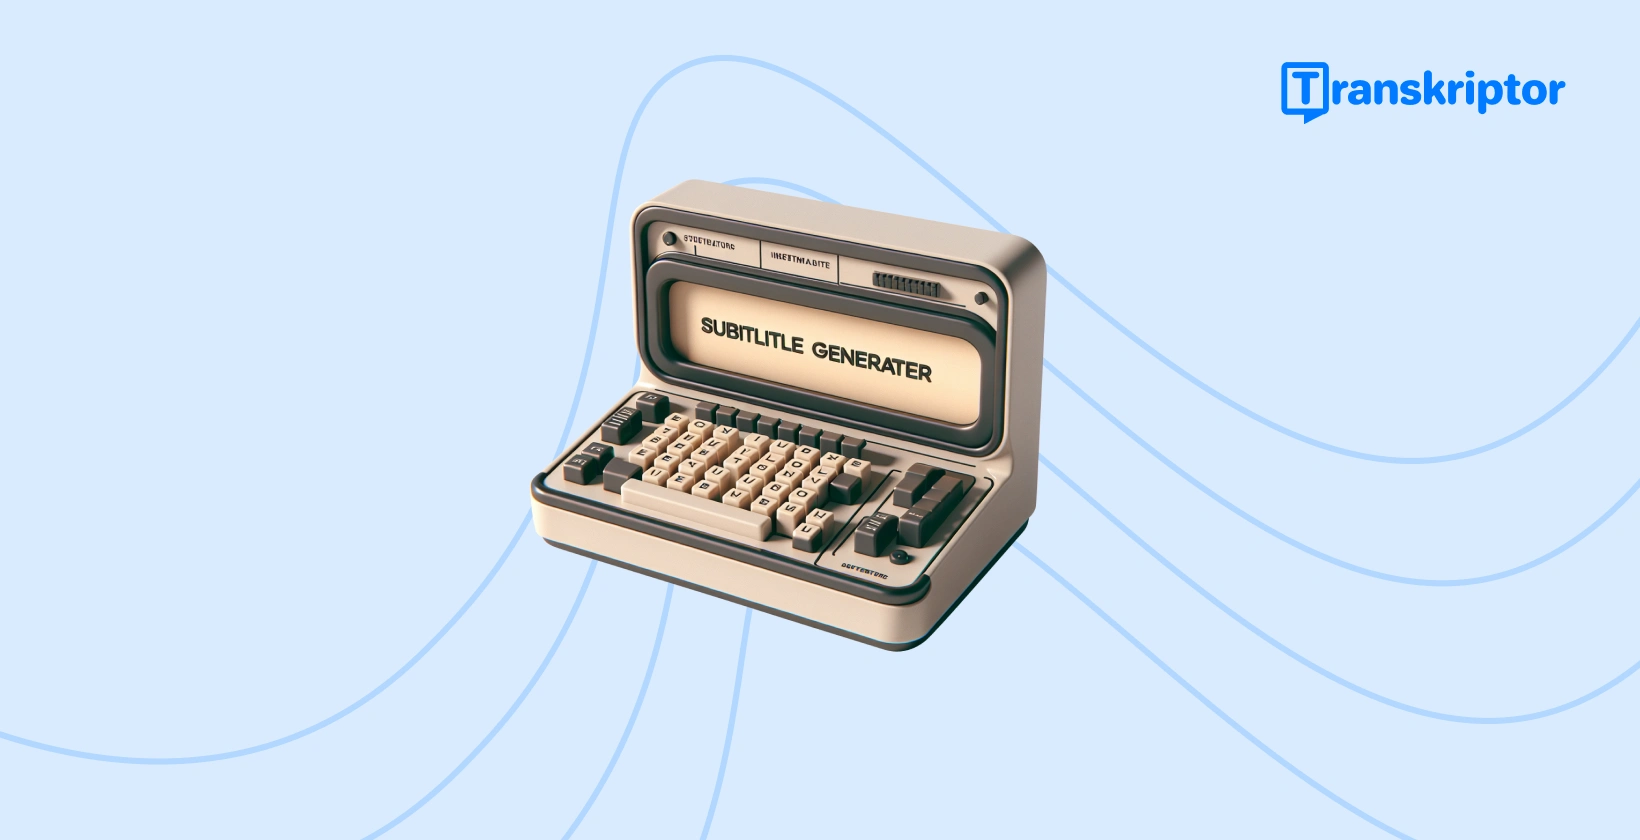 Vintage písací stroj generátora titulkov symbolizujúci proces vytvárania titulkov v iMovie, čím sa zvyšuje dostupnosť videa.